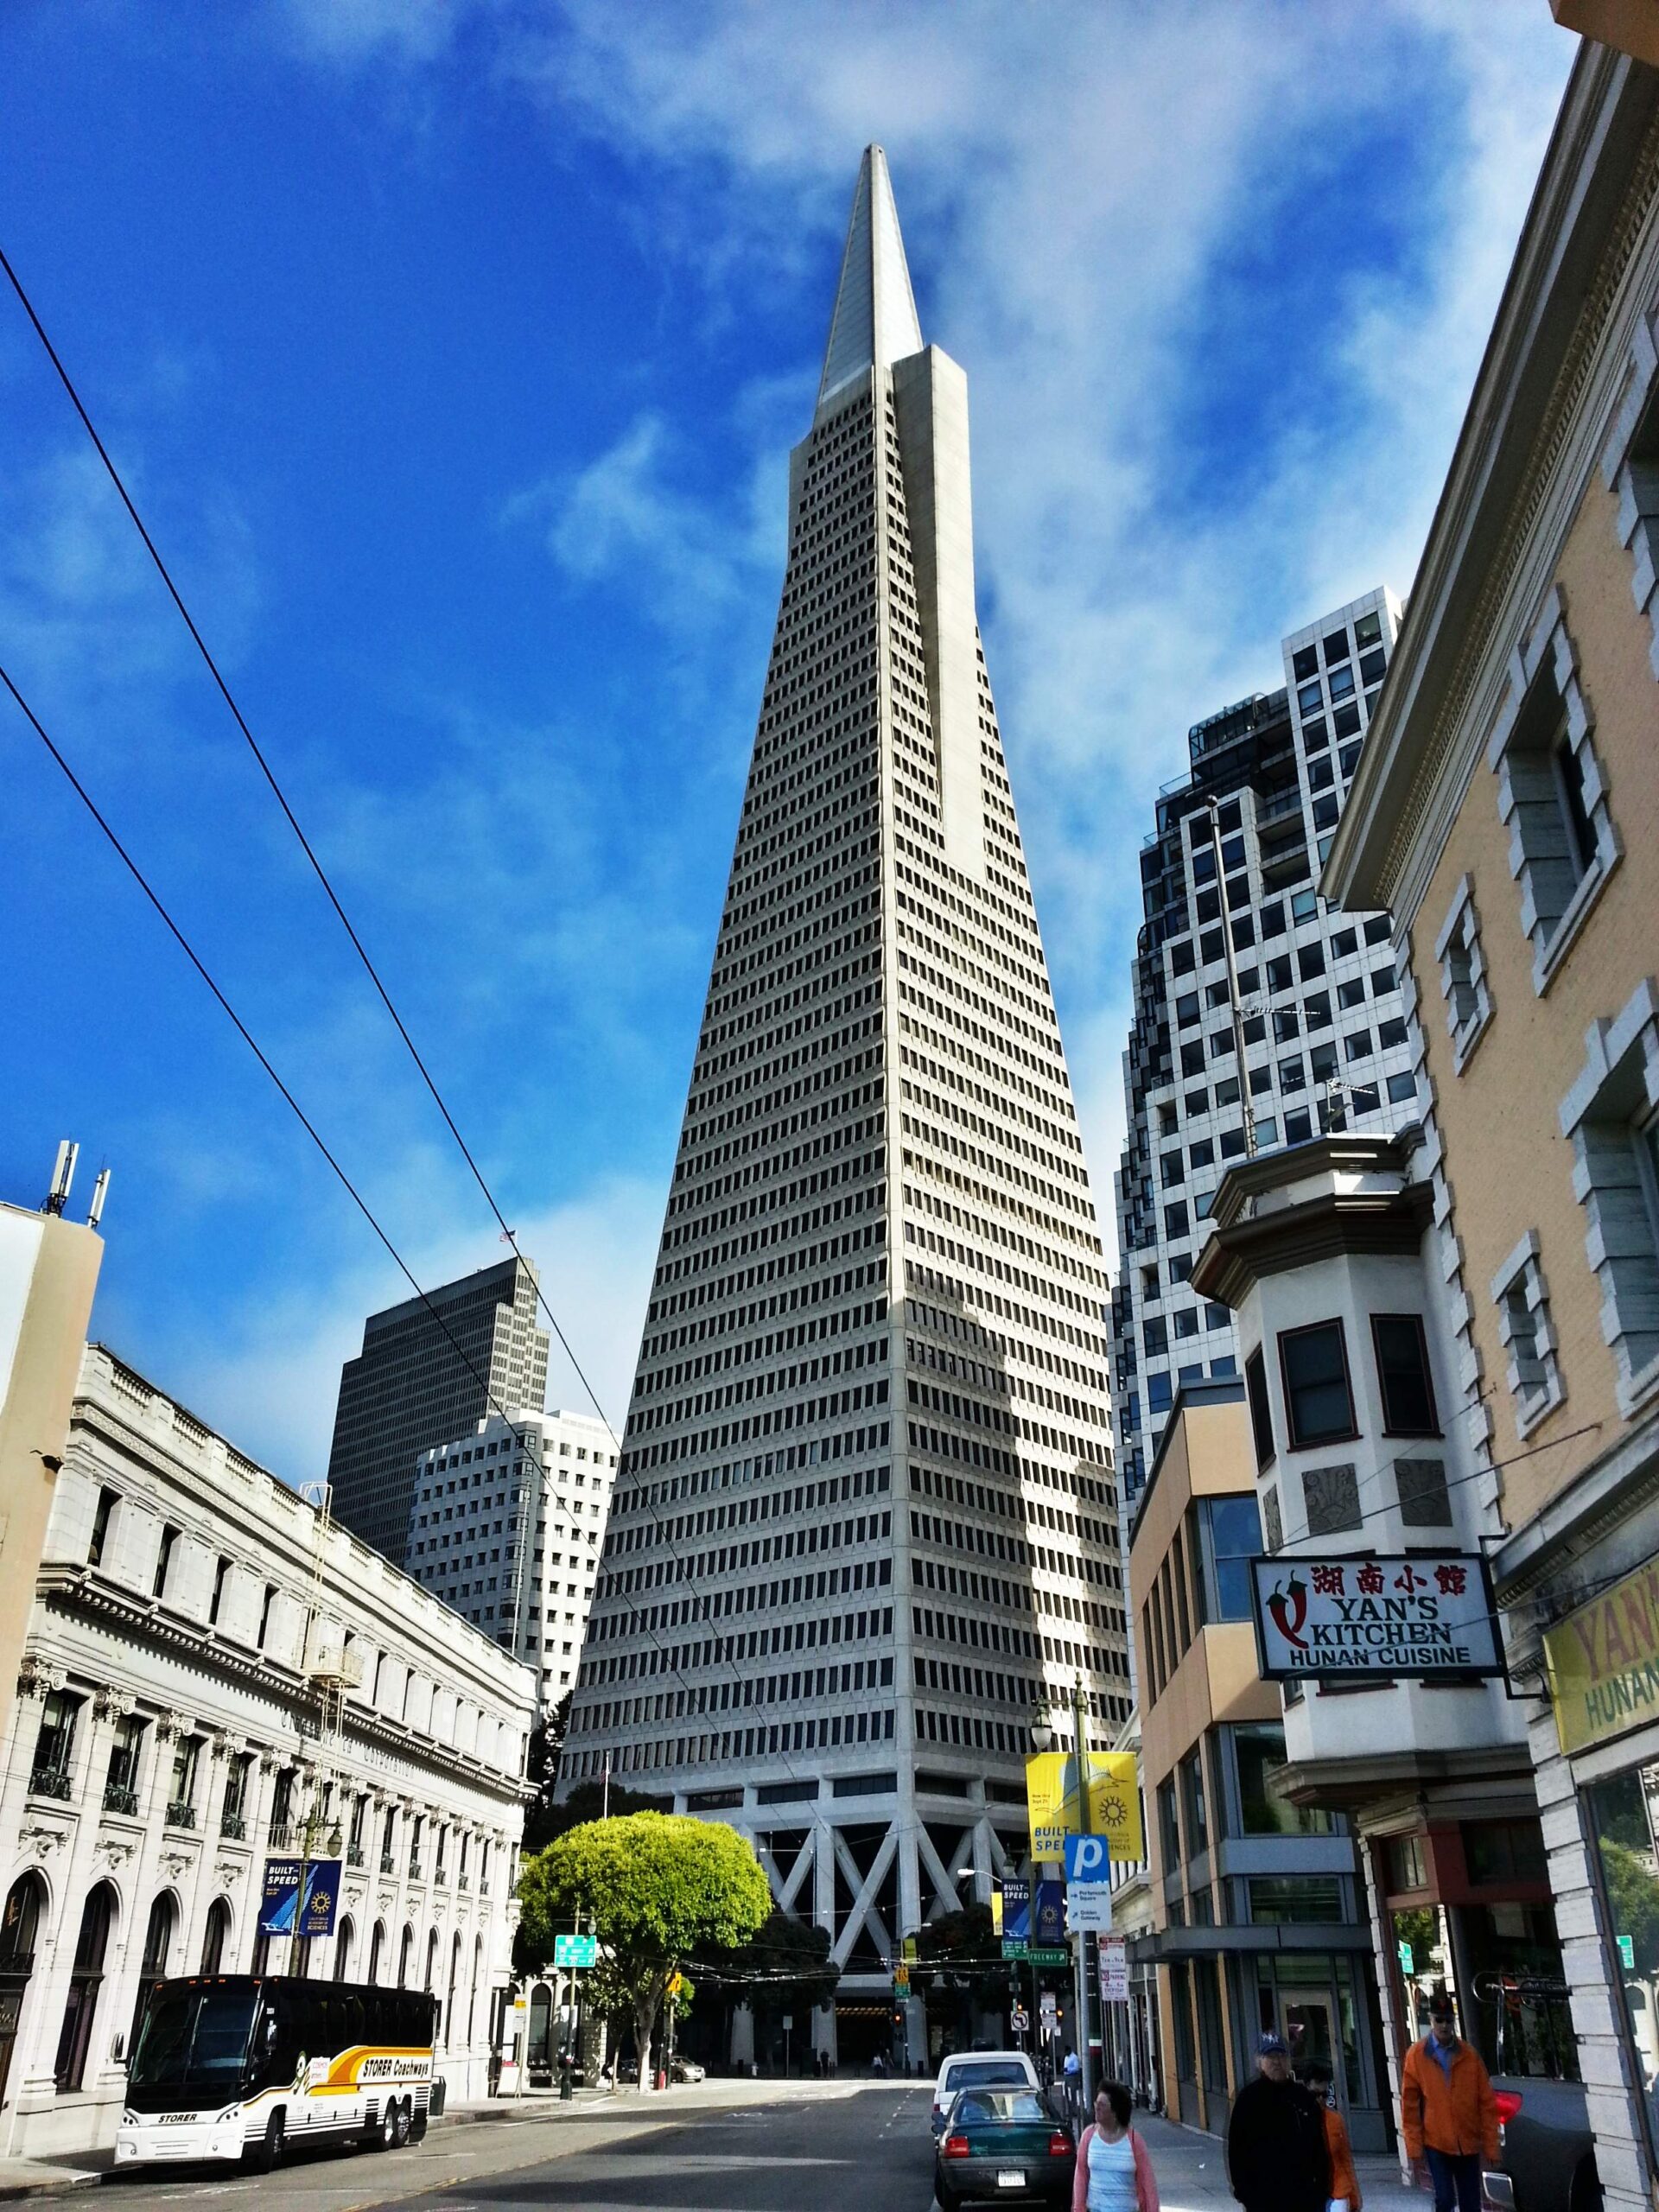 Arquitetura futurista, Transamerica Pyramid, São Francisco, EUA